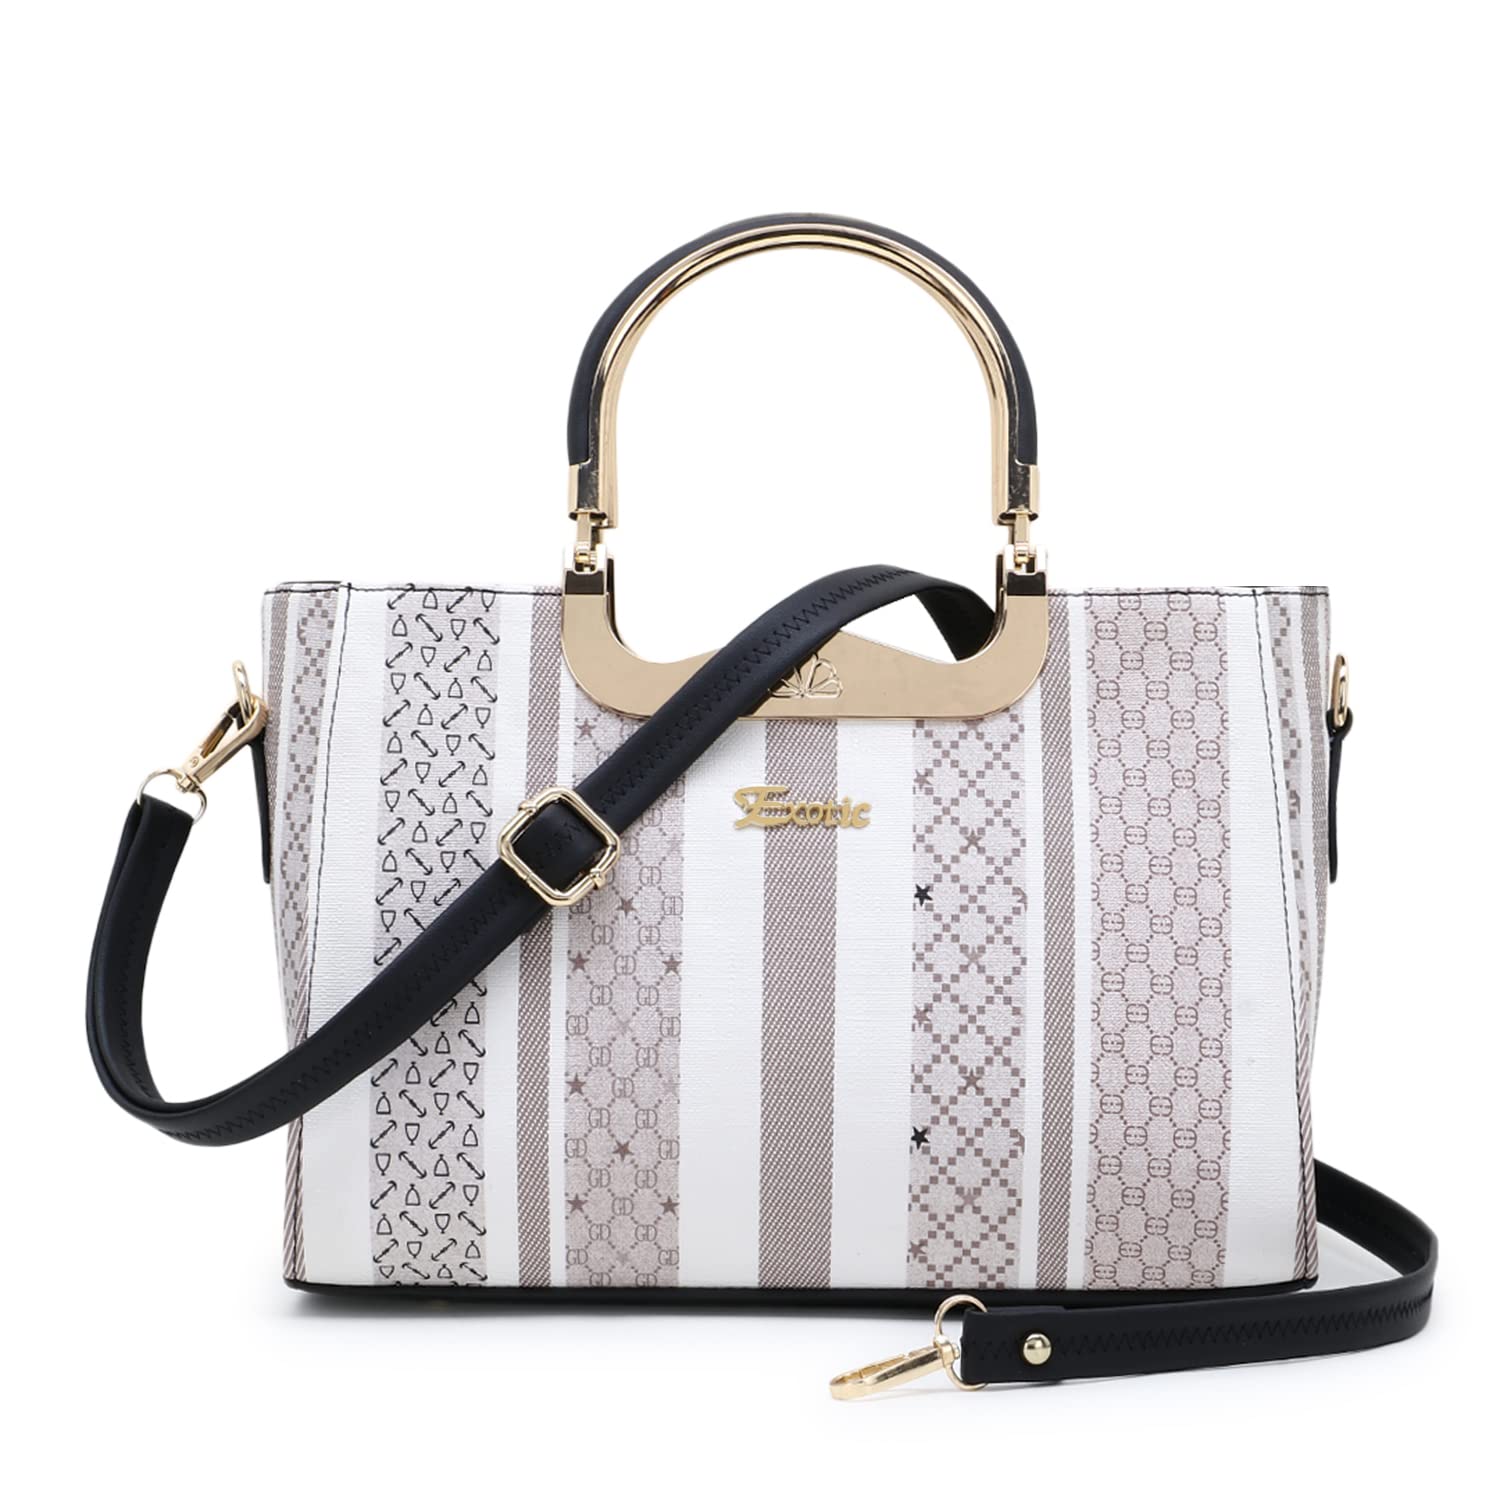 luxury top 10 popular handbag brands